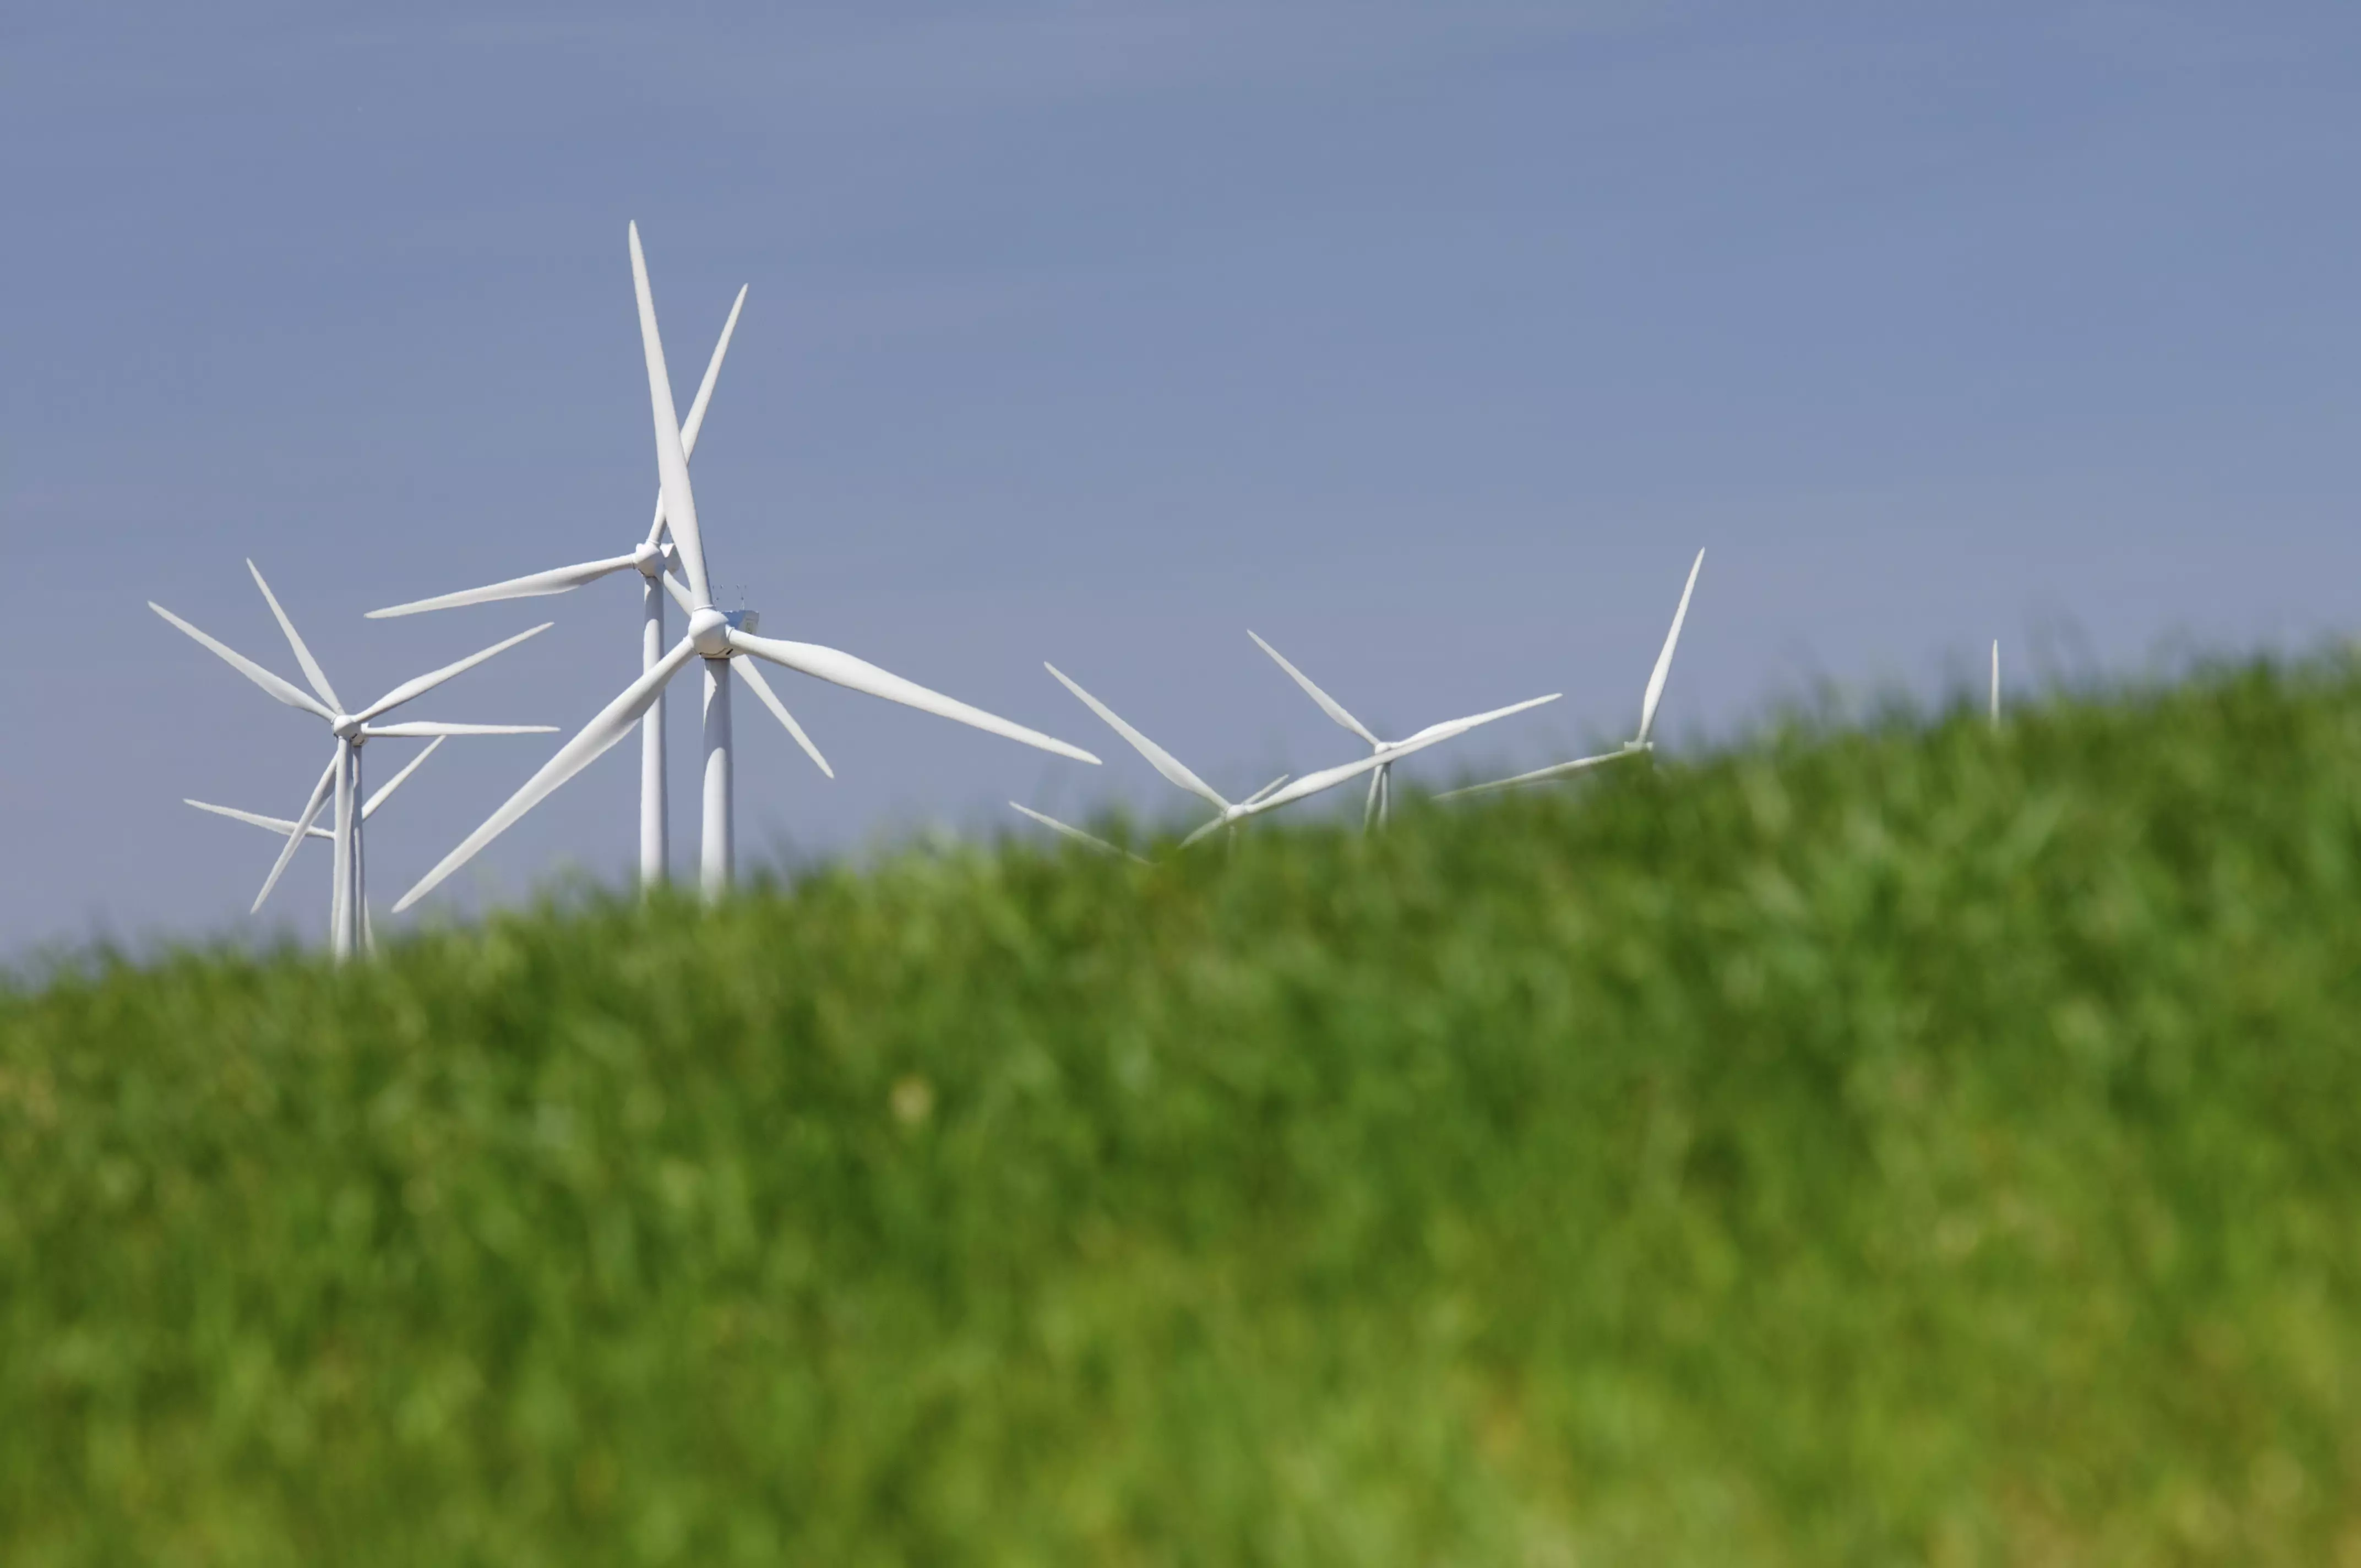 Symbolbild erneuerbare Energien (Windenergie)